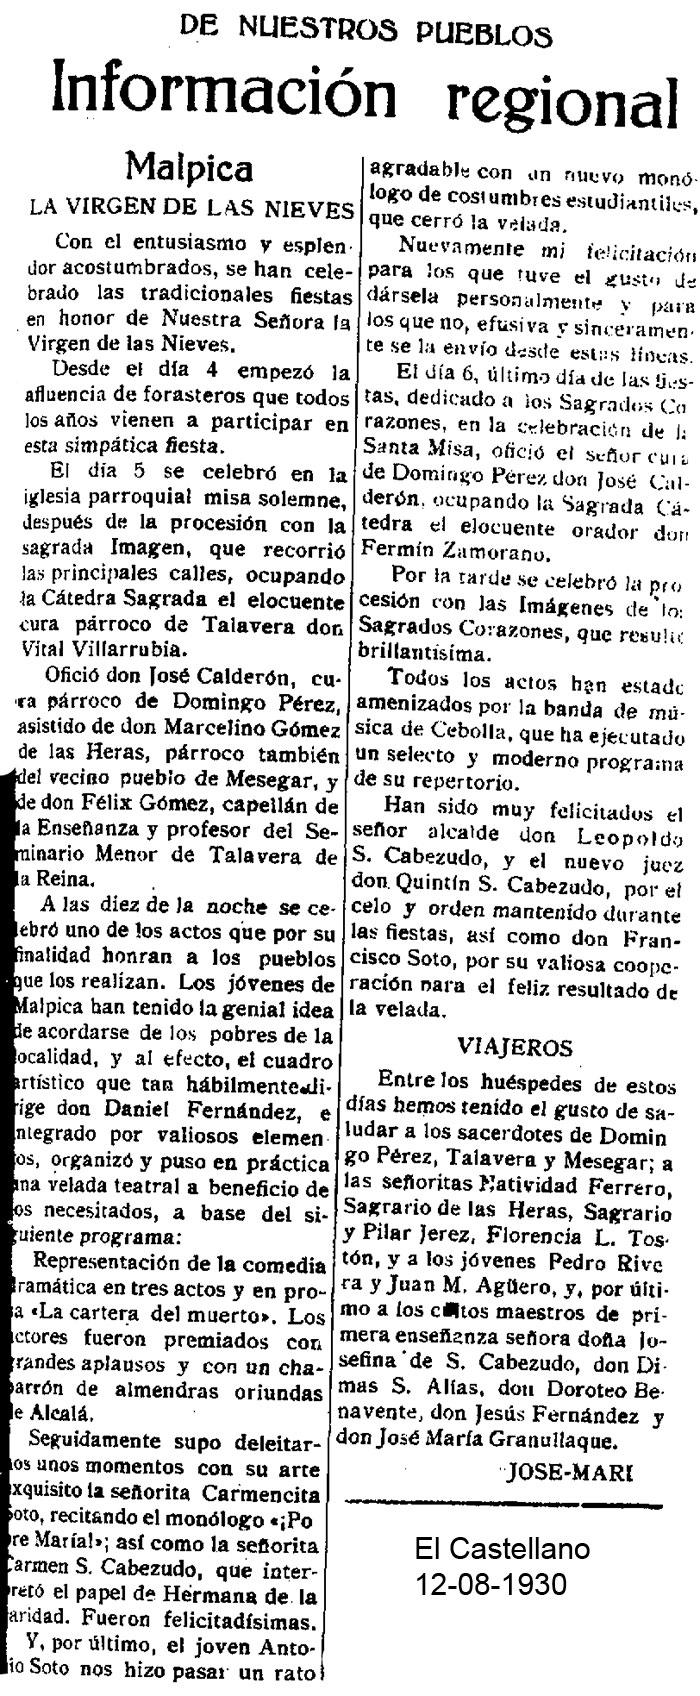 Crónica de la fiesta de la Virgen de las Nieves. El Castellano 12-08-1930